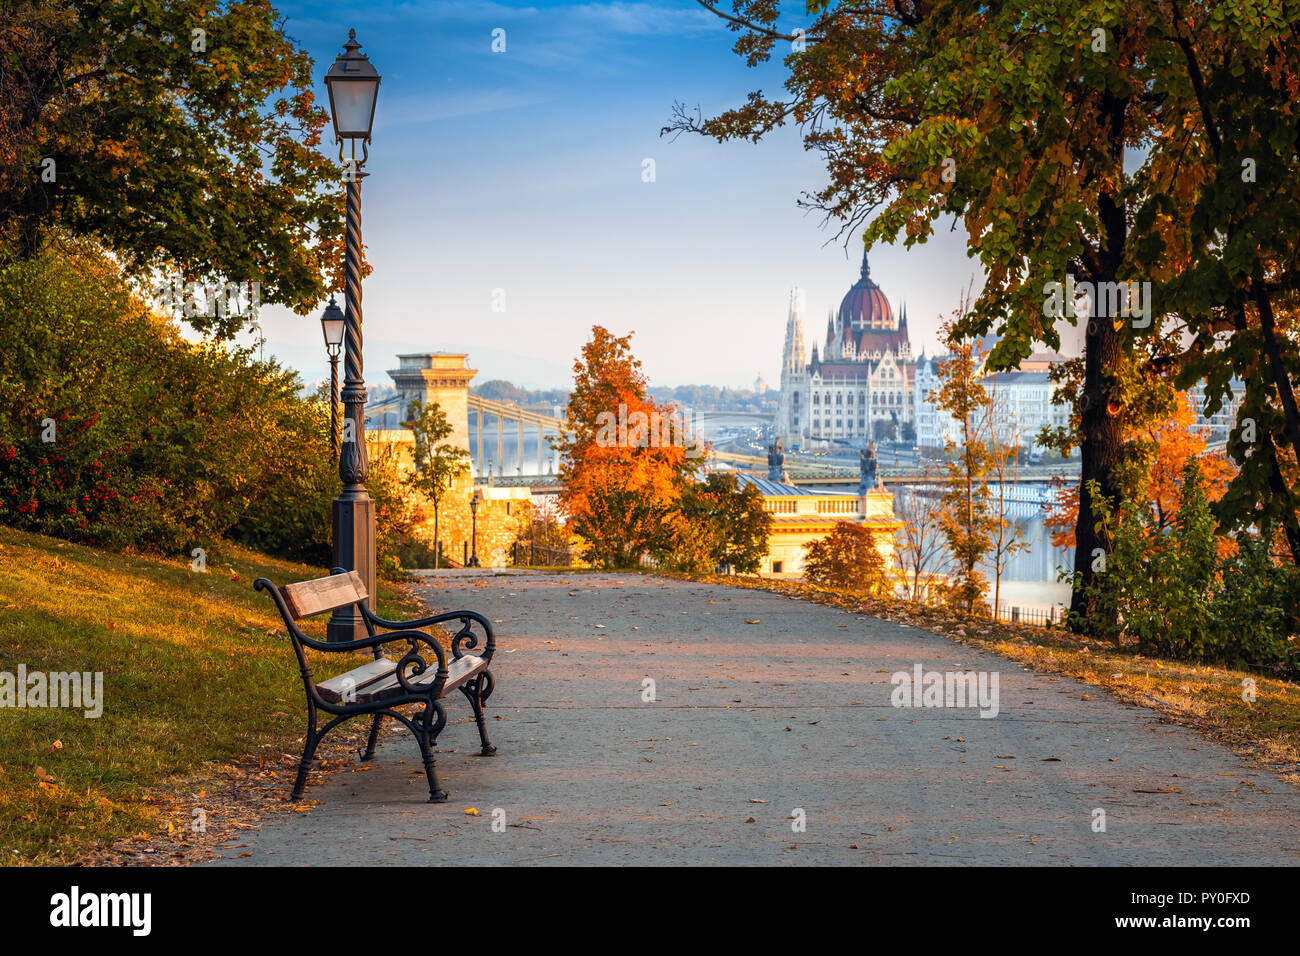 Budapest, Hongrie - lever du soleil romantique scène à quartier de Buda avec banc, lampadaire, feuillage de l'automne, pont à chaînes Széchenyi et le Parlement en arrière-plan Banque D'Images